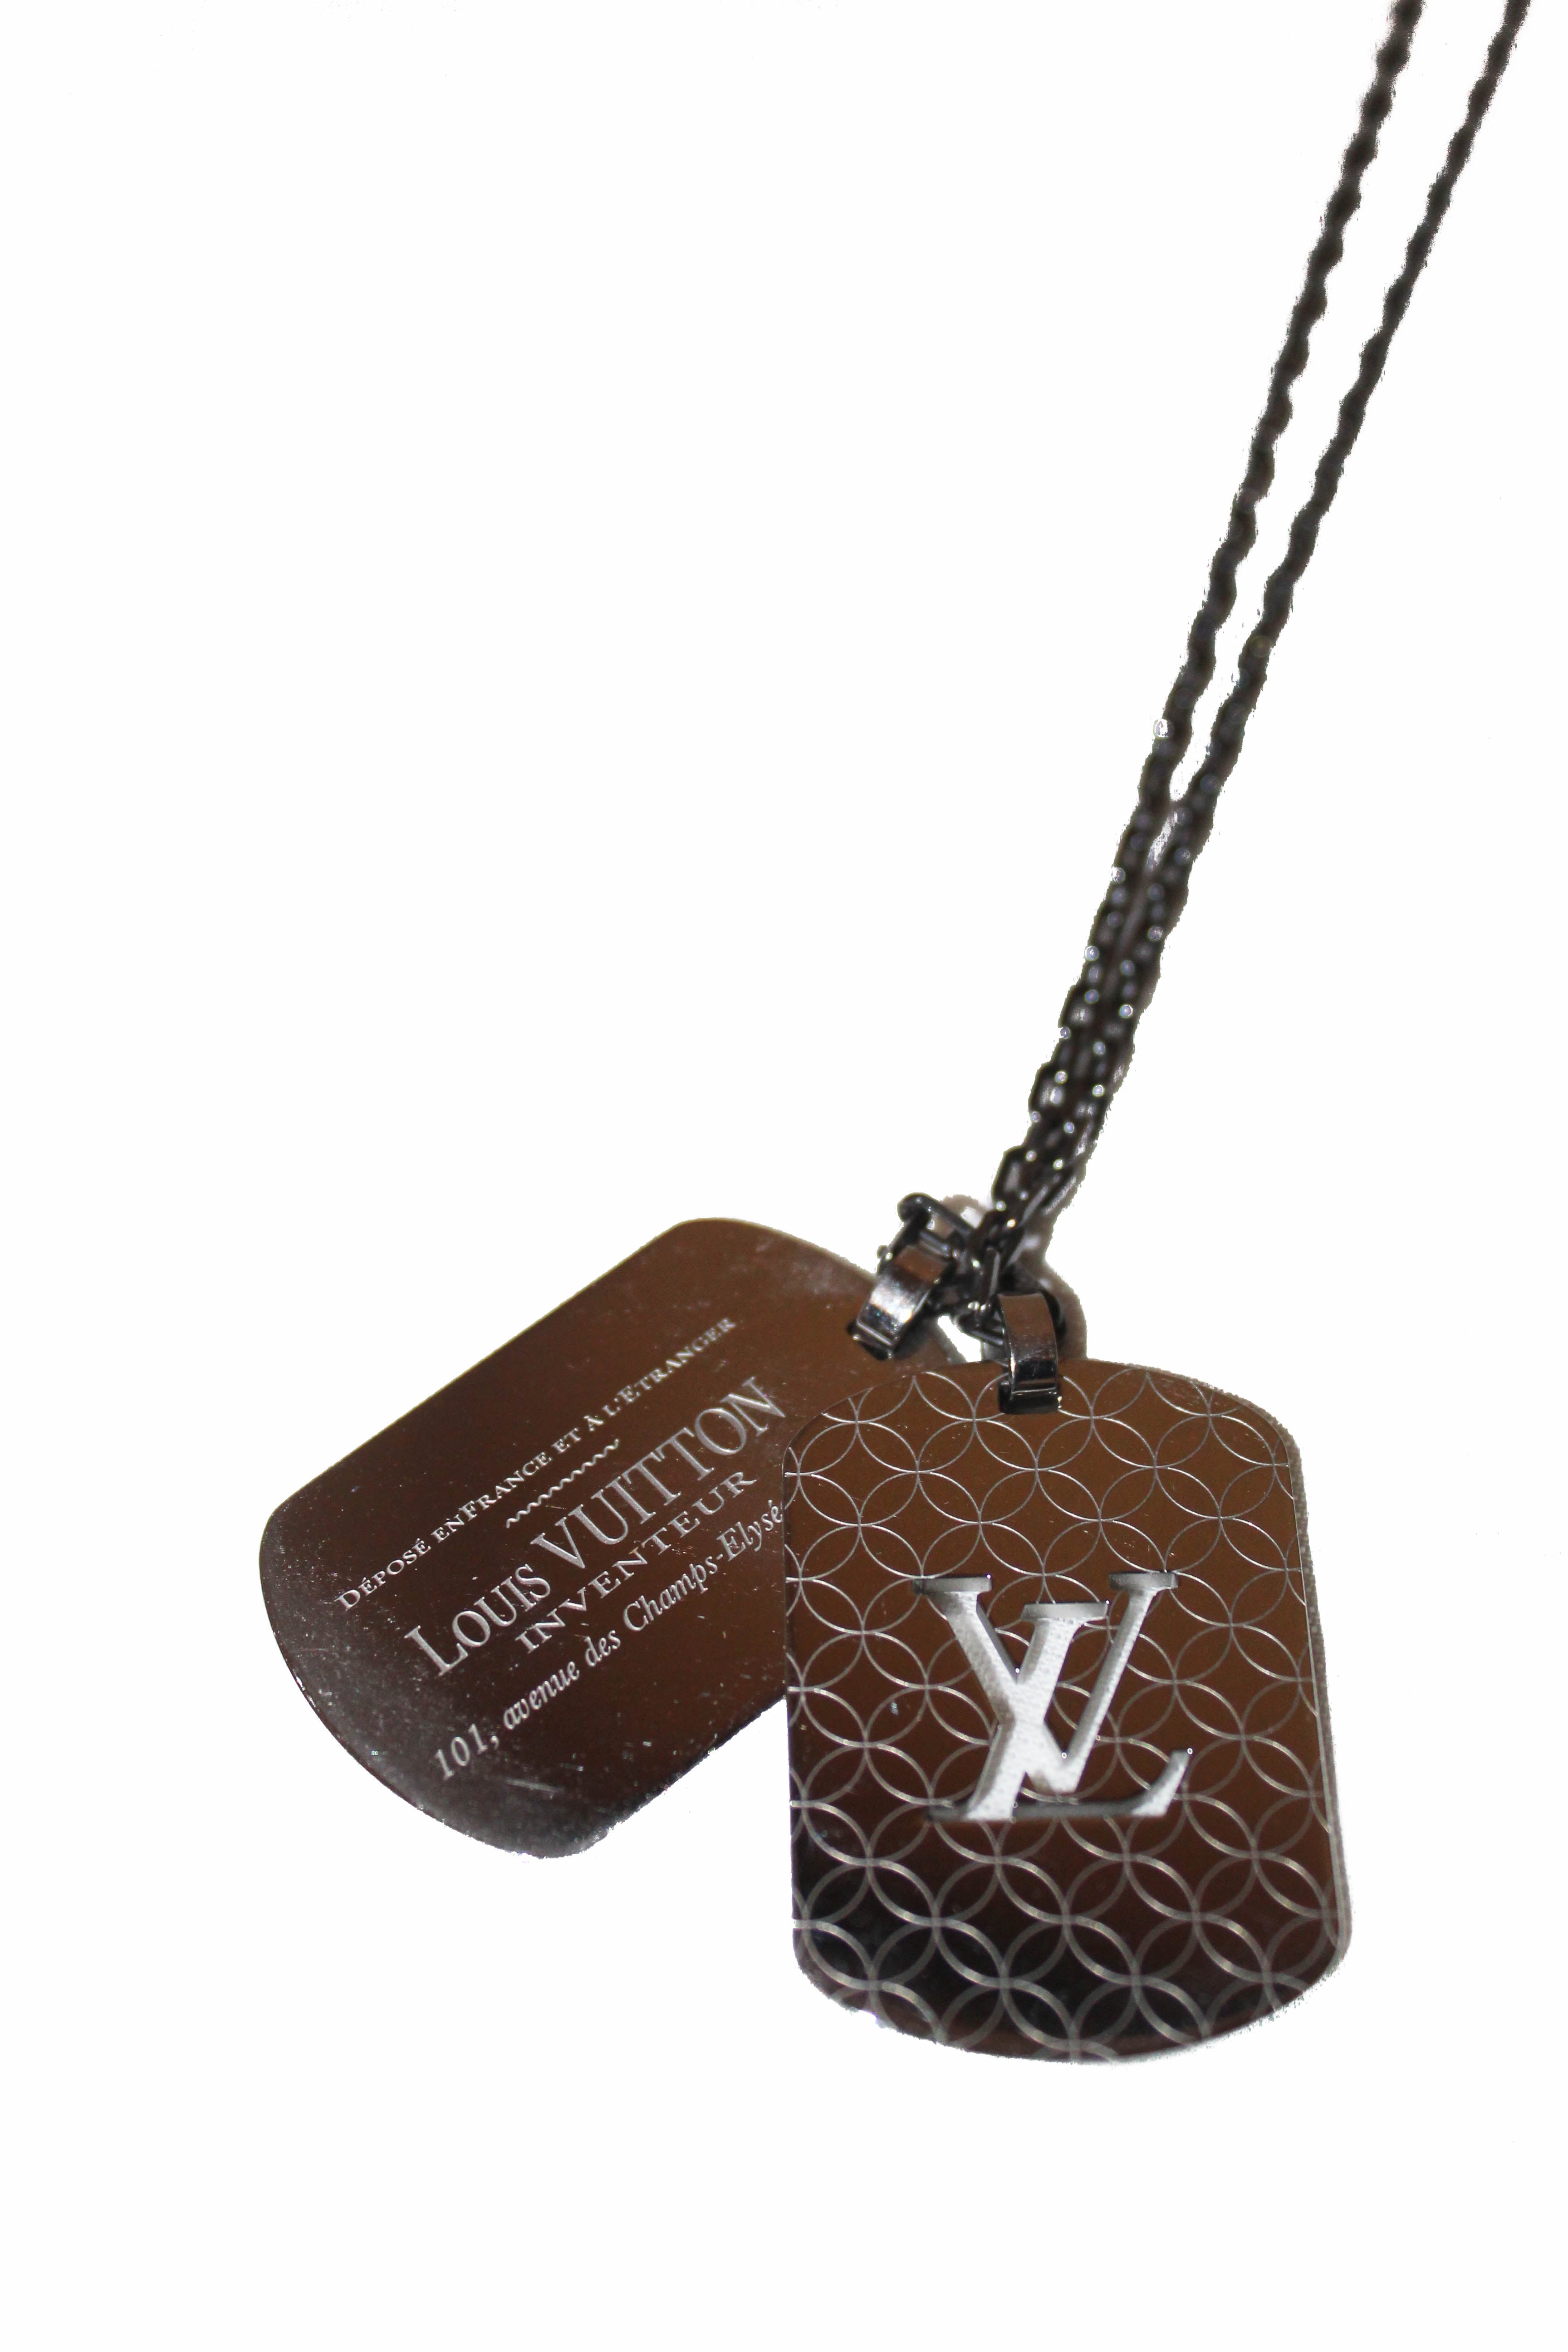 Louis Vuitton LV Tag Pendant Necklace